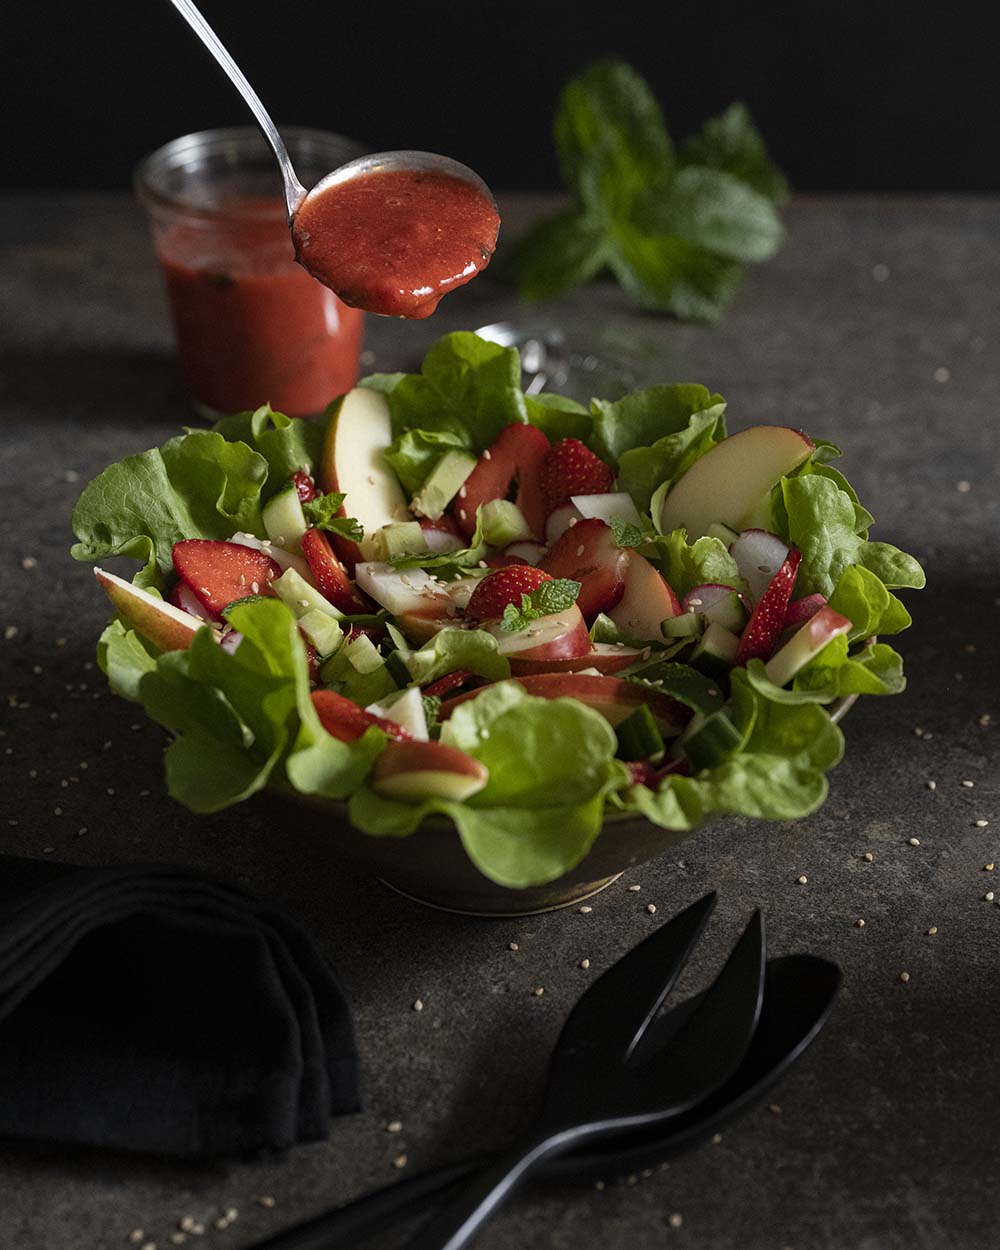 Mit einer Schöpfkelle geben wir das Erdbeer-Dressing auf den Salat.